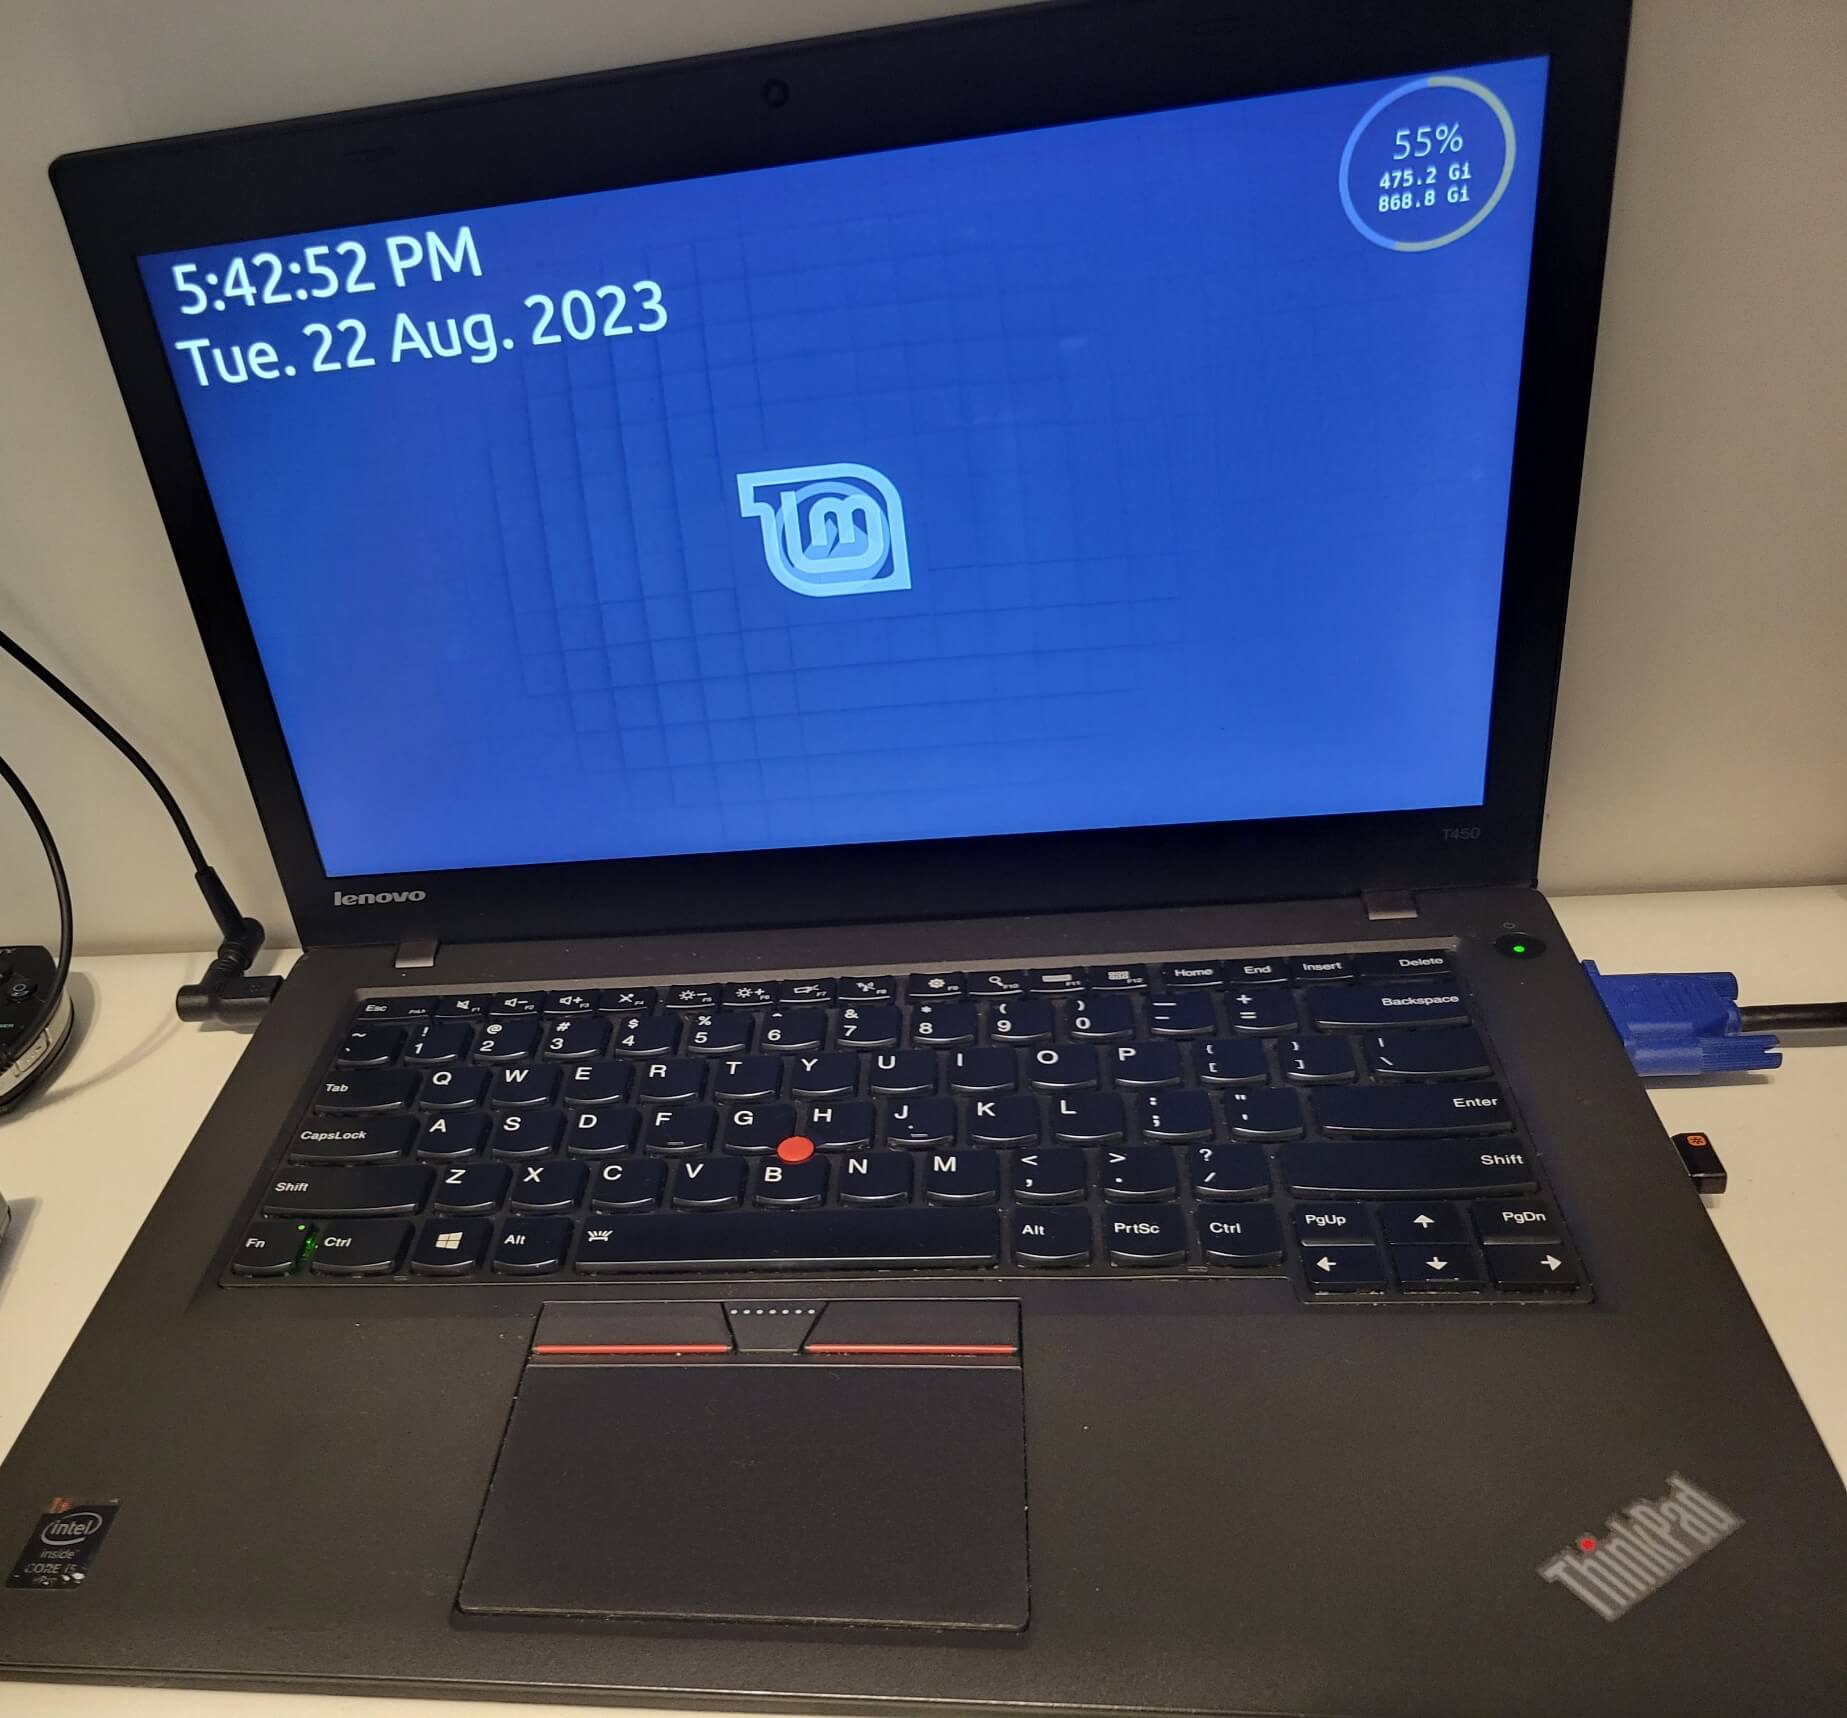 Laptop on Linux Mint desktop